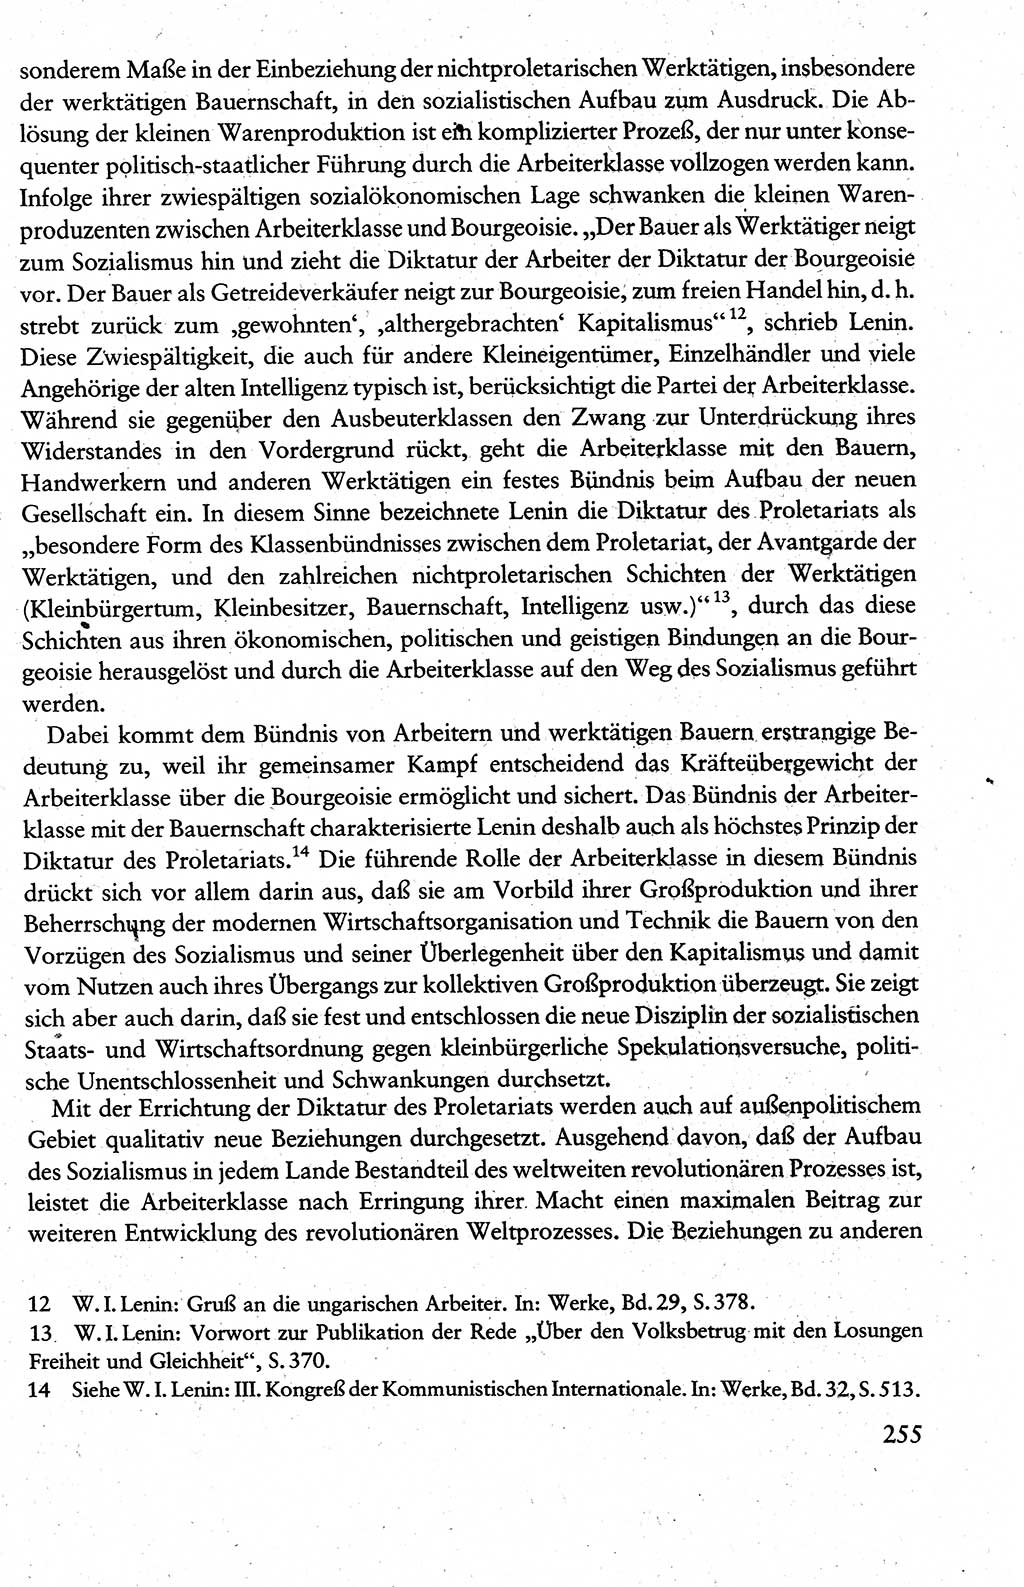 Wissenschaftlicher Kommunismus [Deutsche Demokratische Republik (DDR)], Lehrbuch für das marxistisch-leninistische Grundlagenstudium 1983, Seite 255 (Wiss. Komm. DDR Lb. 1983, S. 255)